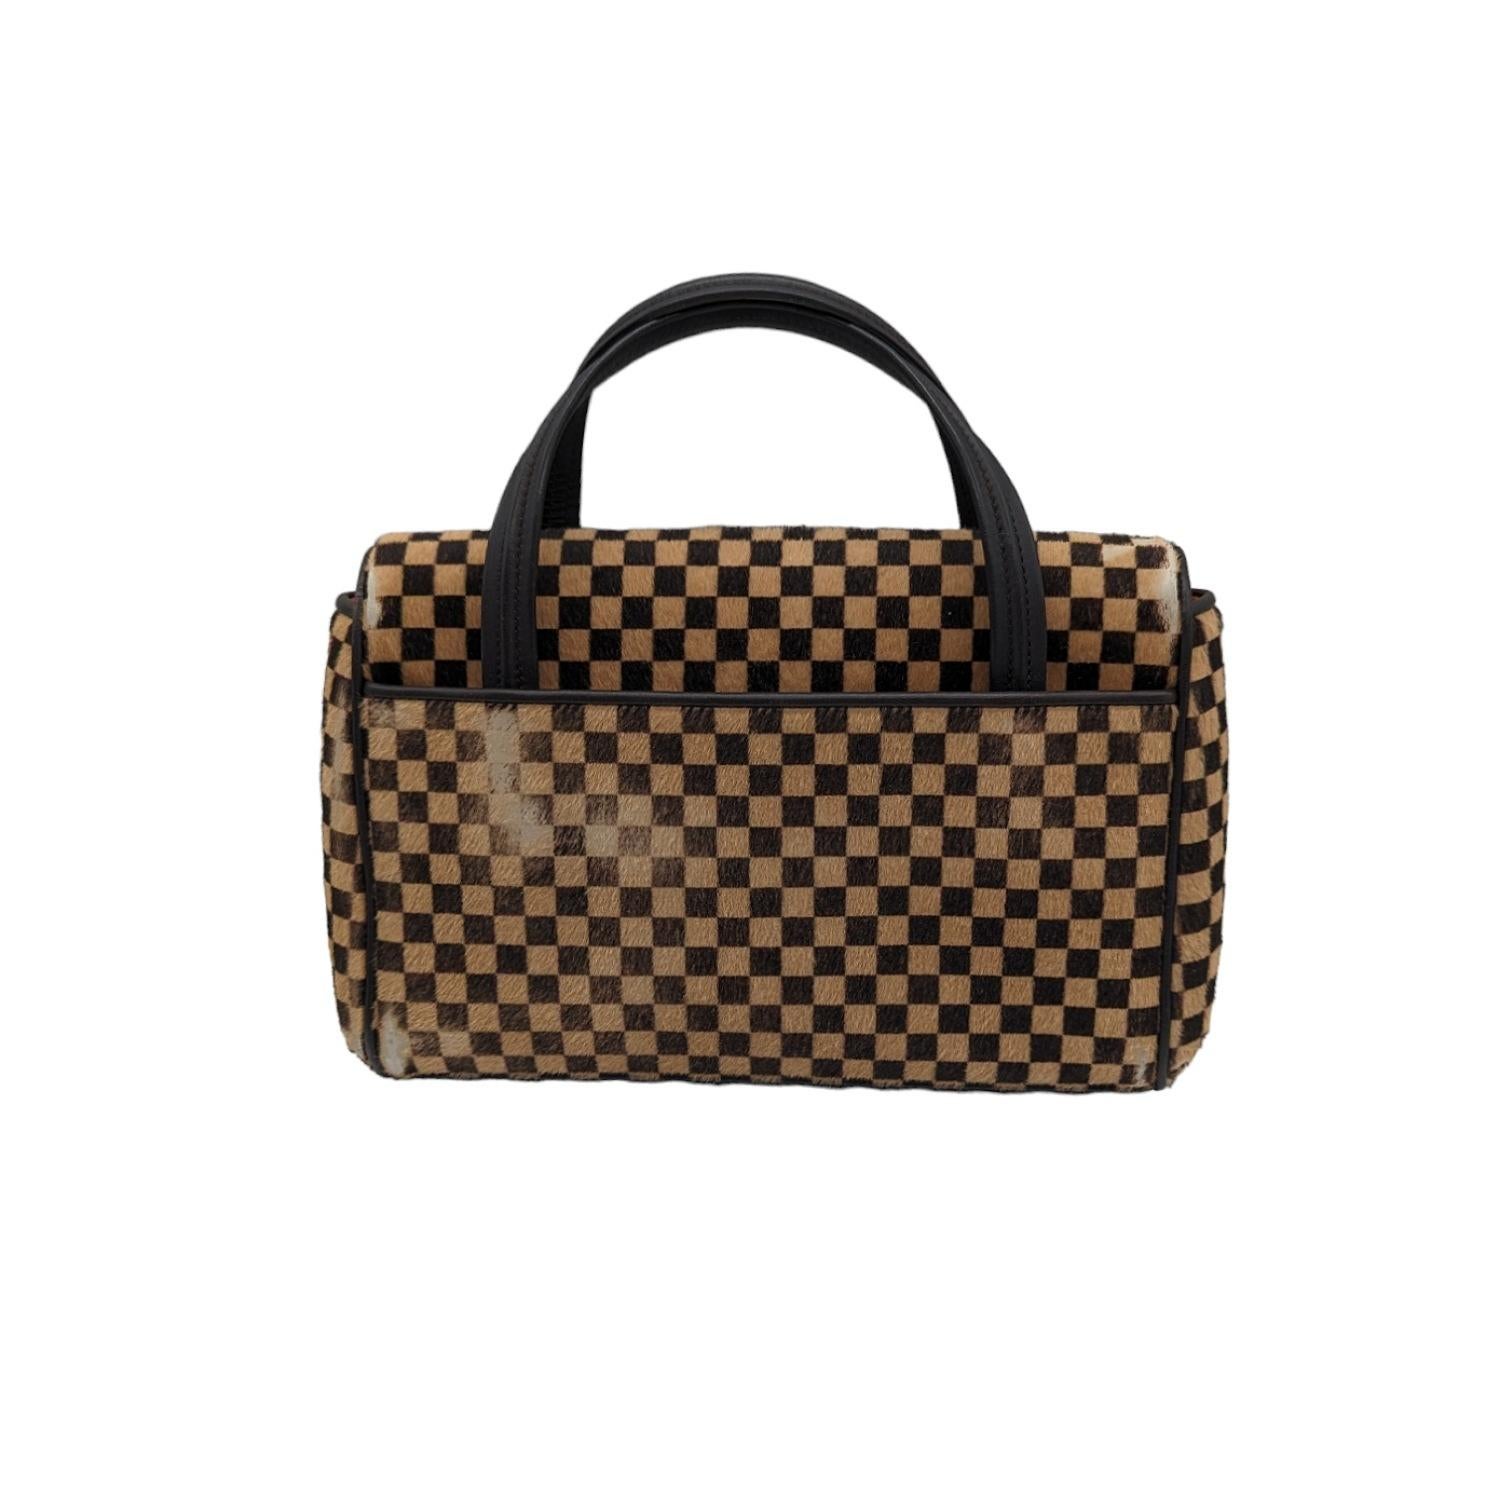 Louis Vuitton Damier Sauvage Lionne Handbag In Fair Condition For Sale In Scottsdale, AZ